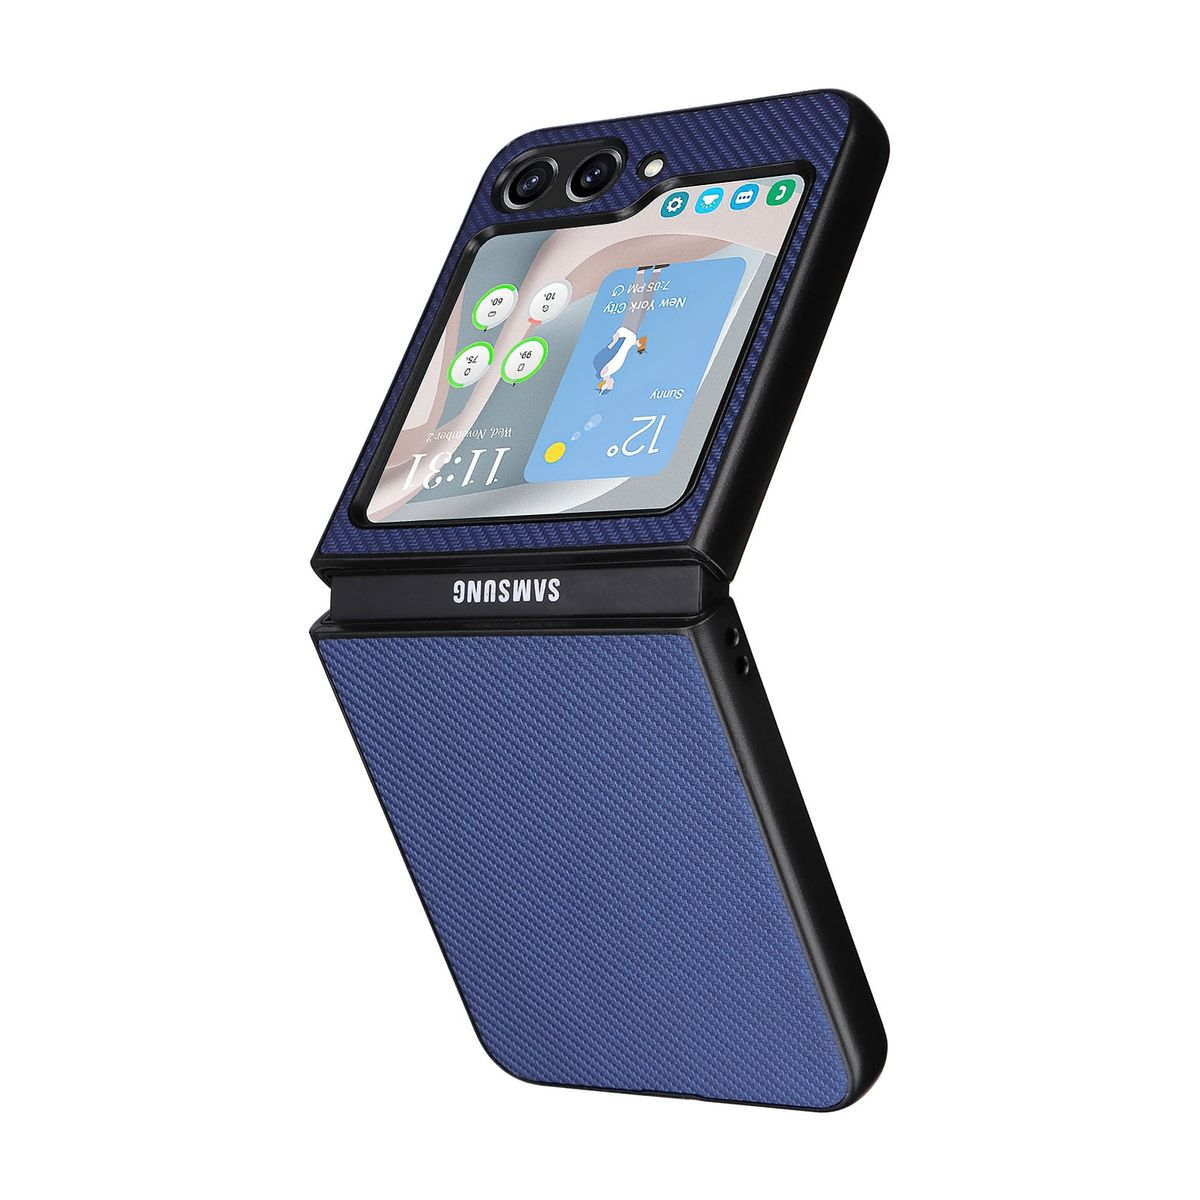 KÖNIG DESIGN Case, Galaxy 5G, Samsung, Blau Flip5 Z Backcover